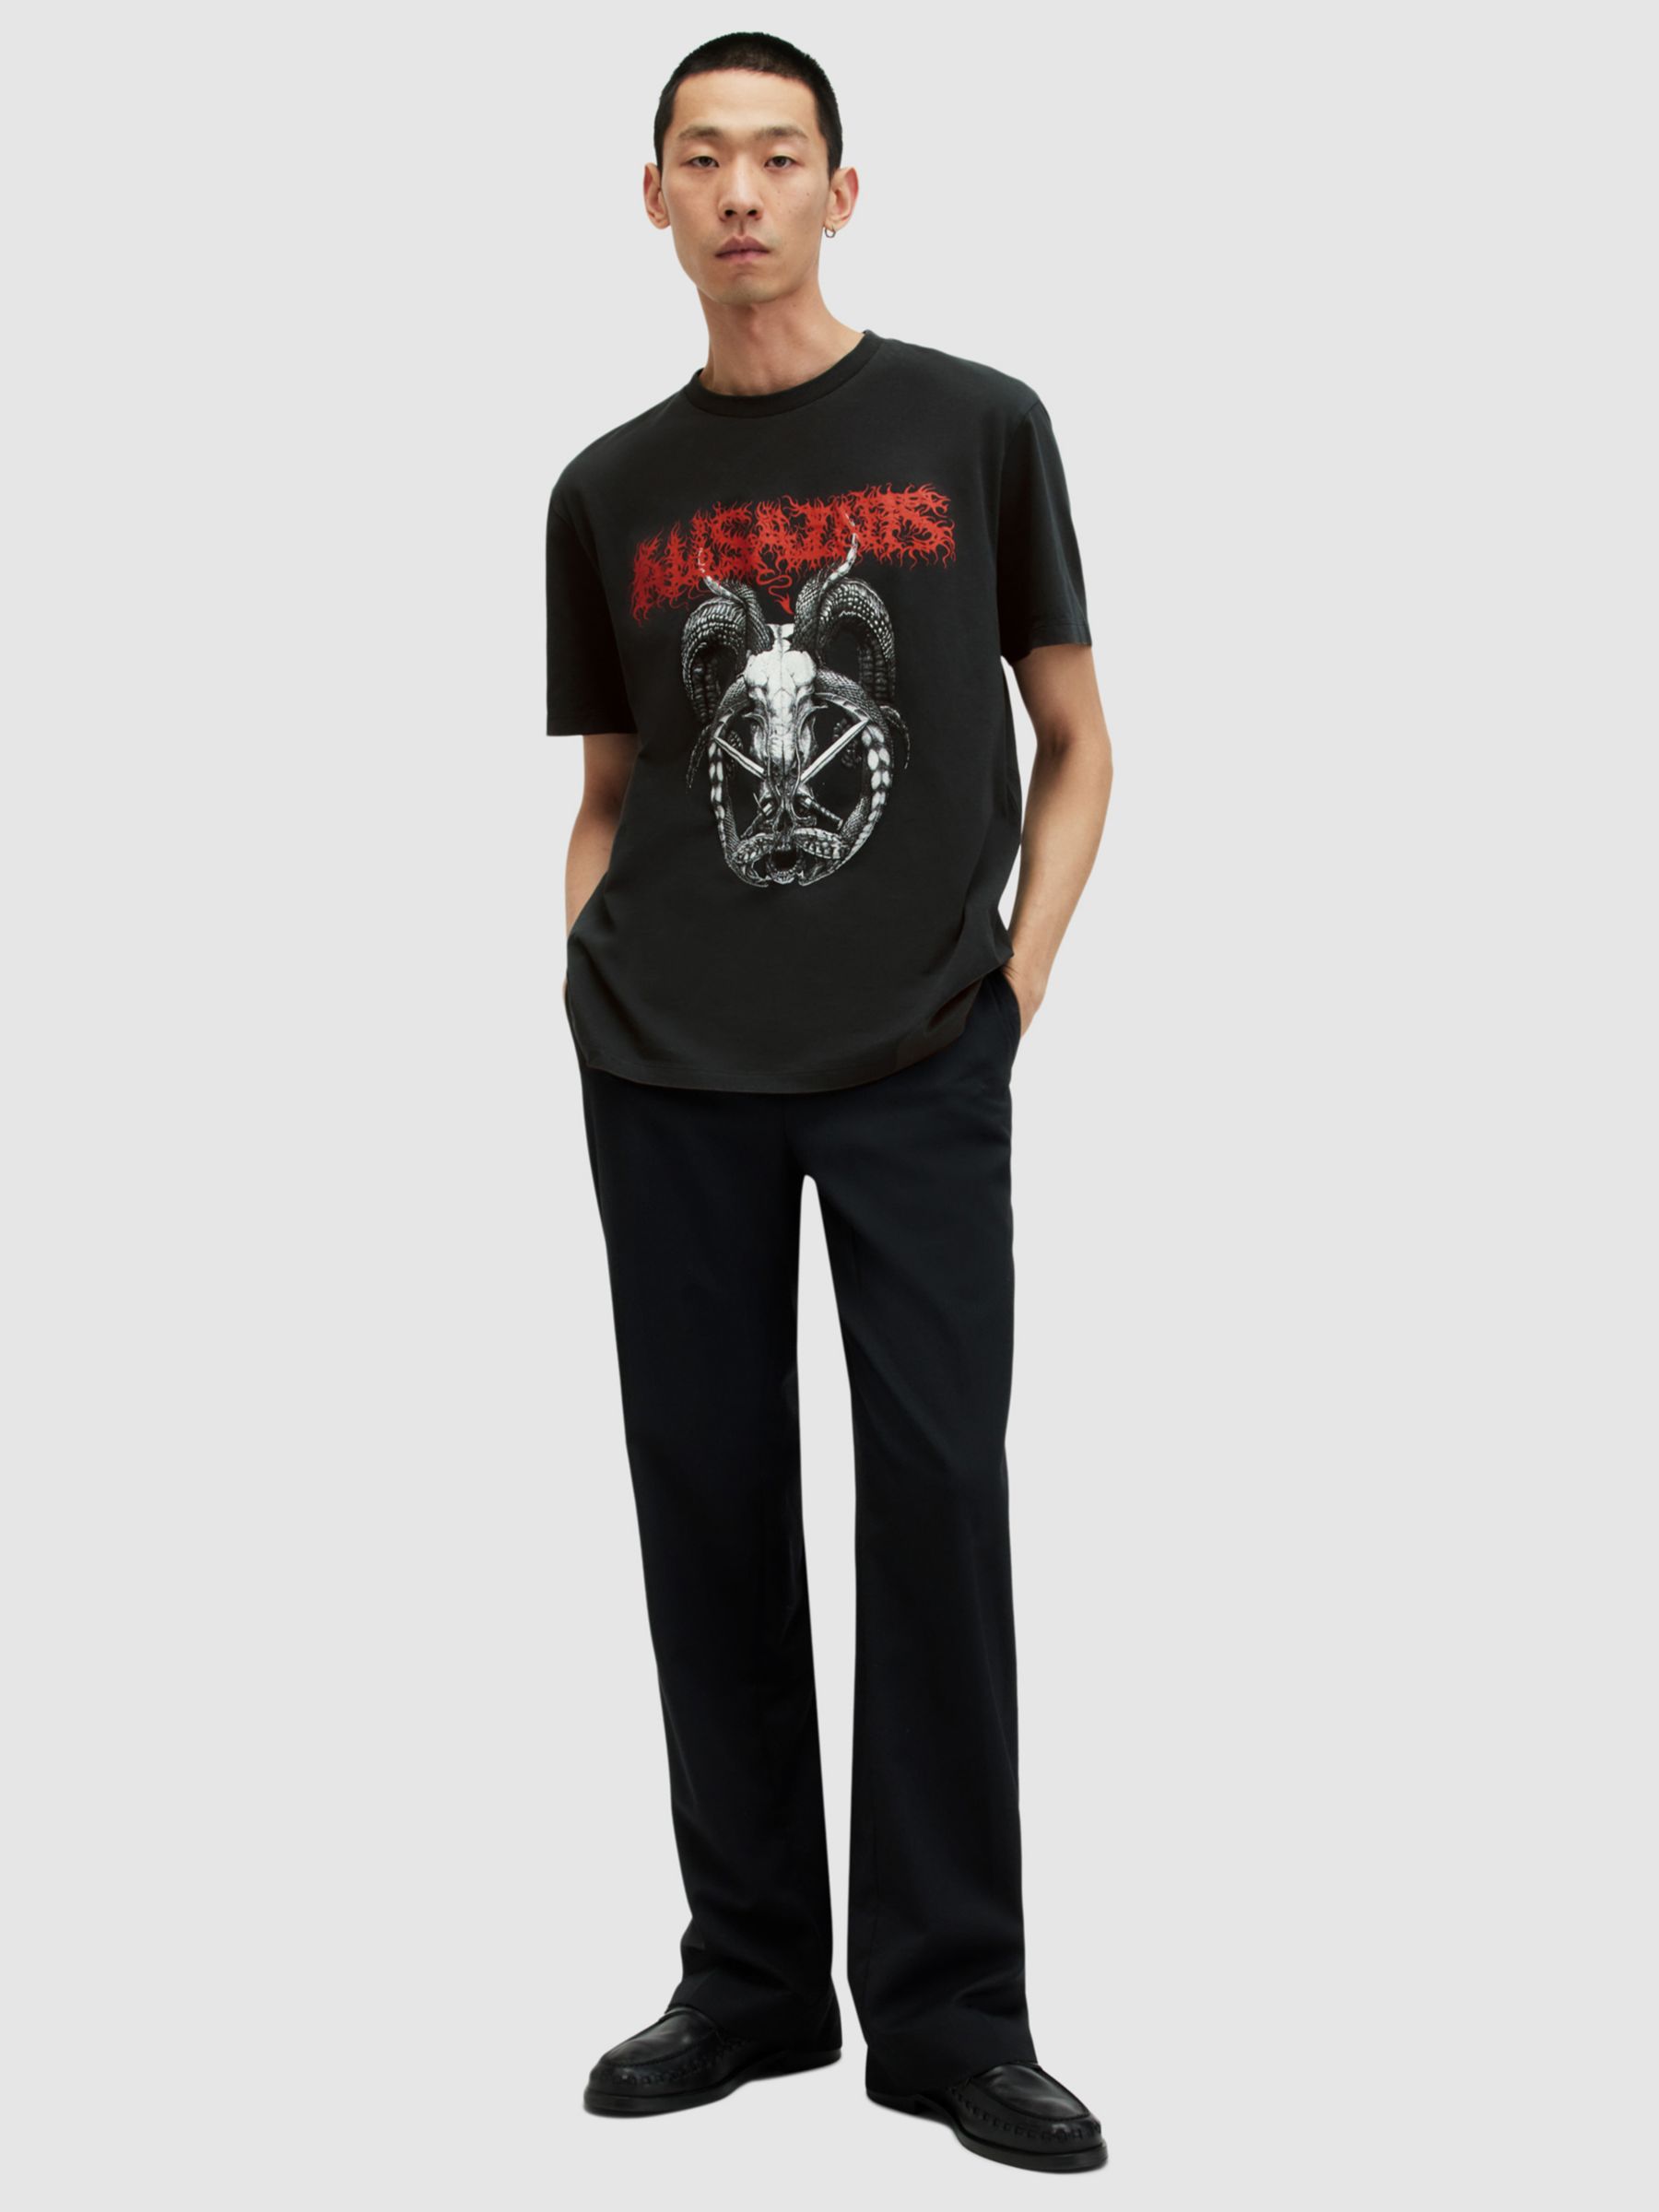 AllSaints Archon Short Sleeve Graphic T-Shirt, Washed Black, L